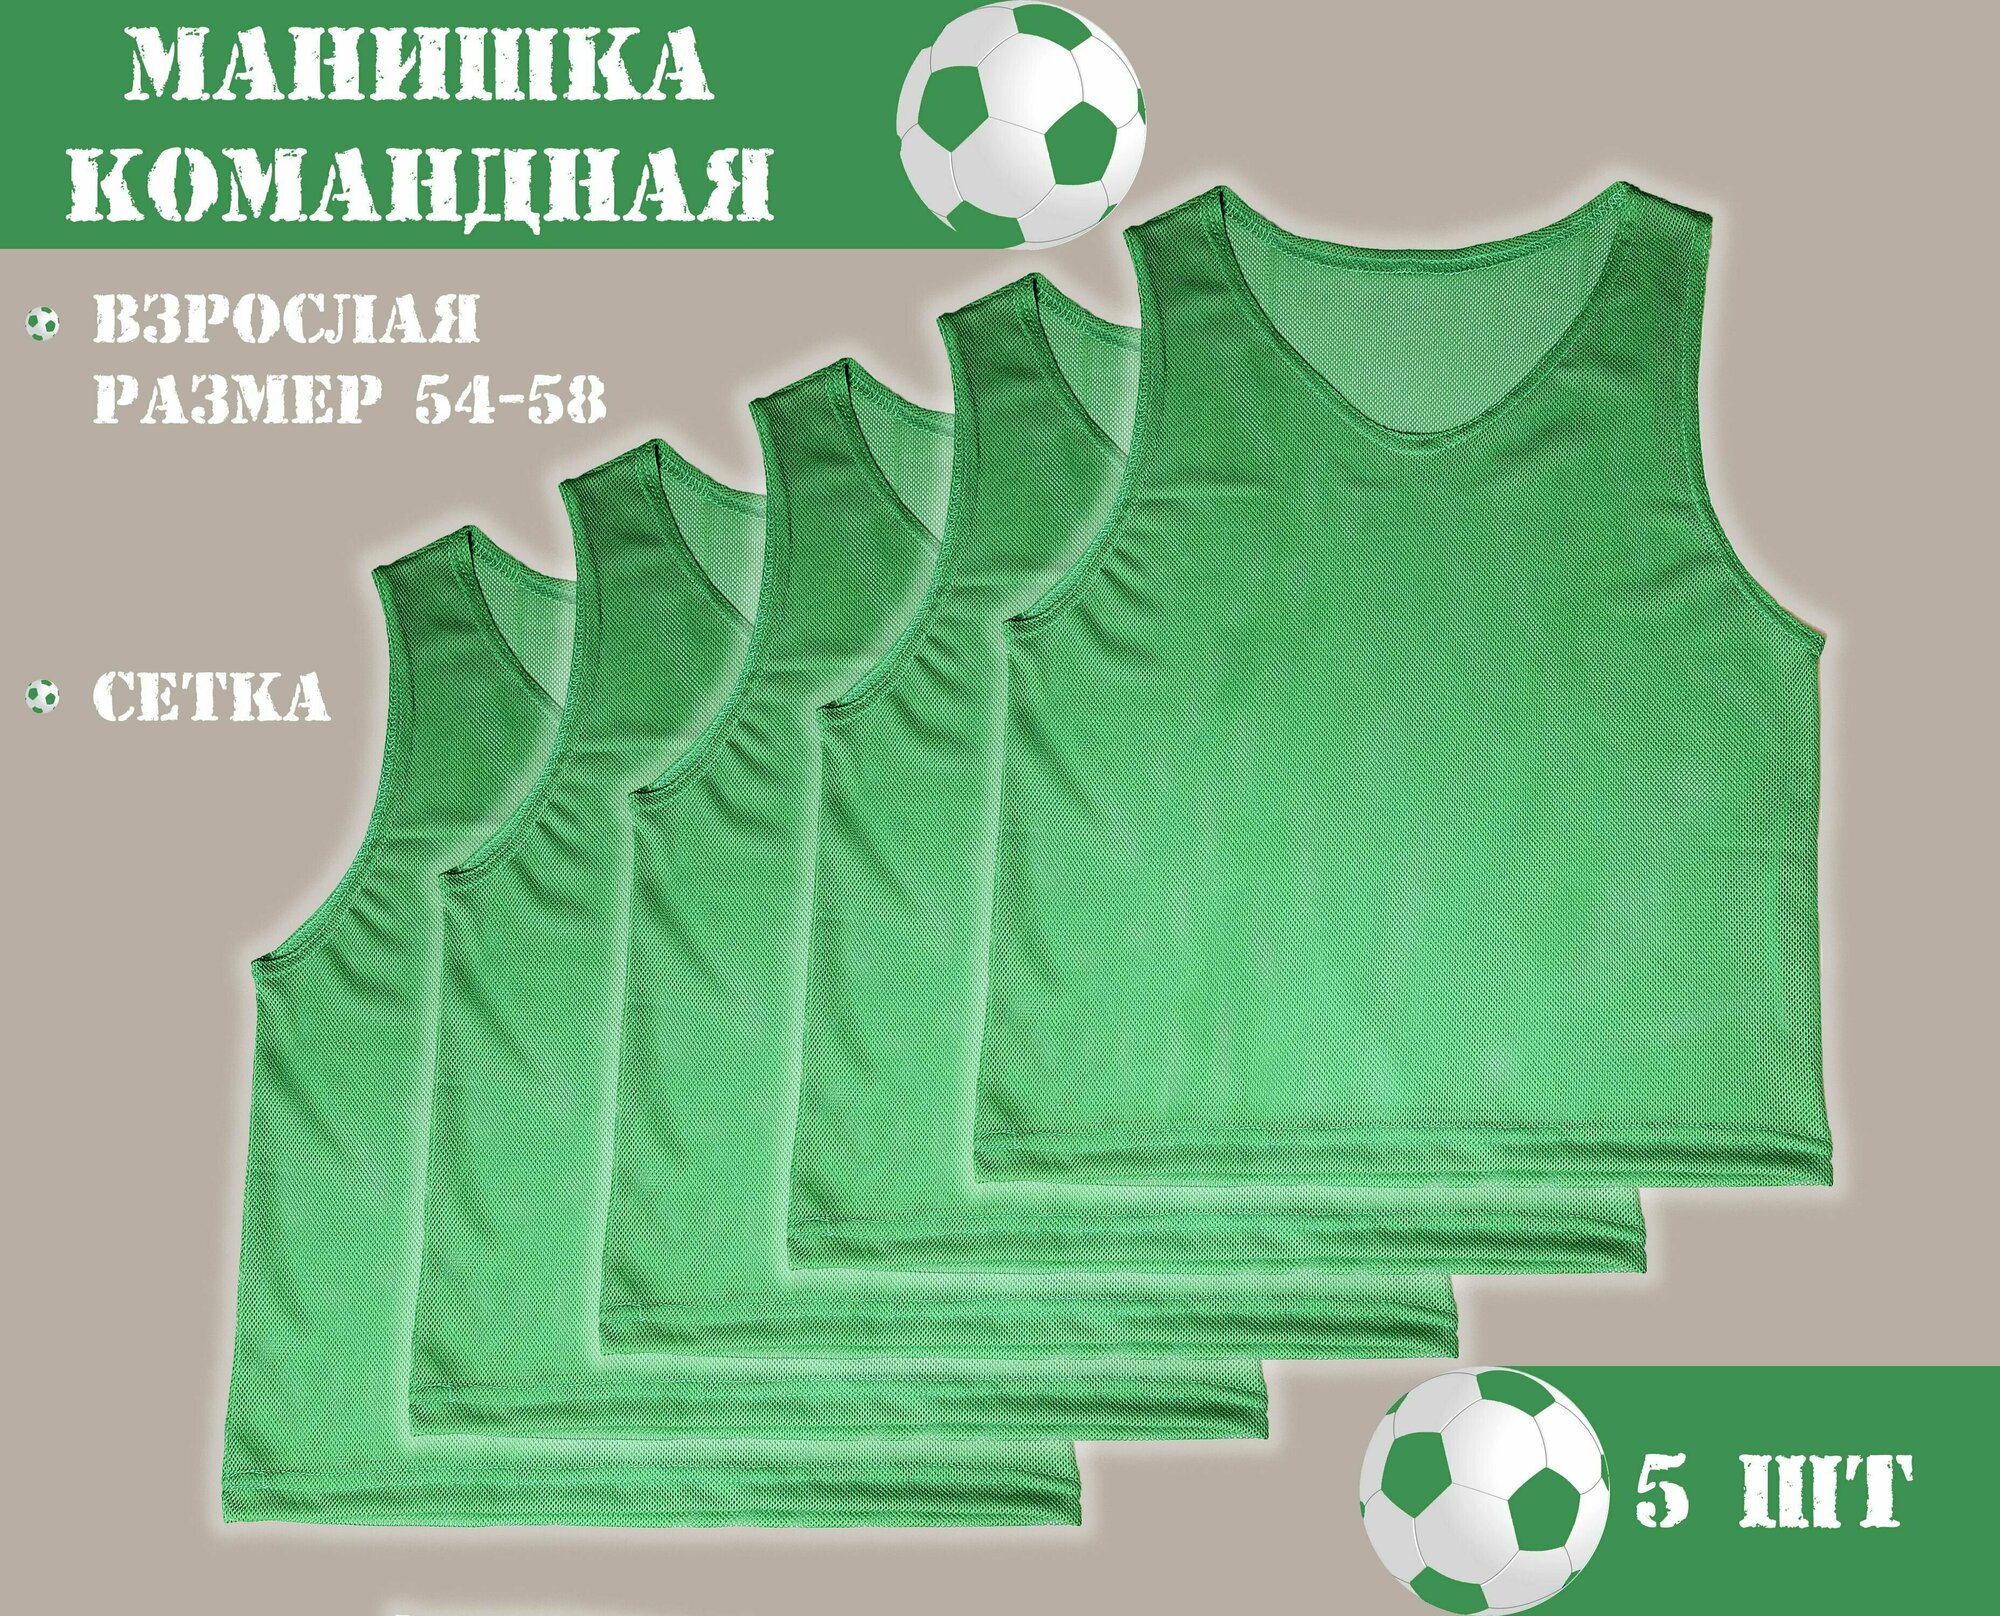 Манишка футбольная сетчатая (взрослая) зеленая (5 шт в упаковке) размер 54-58